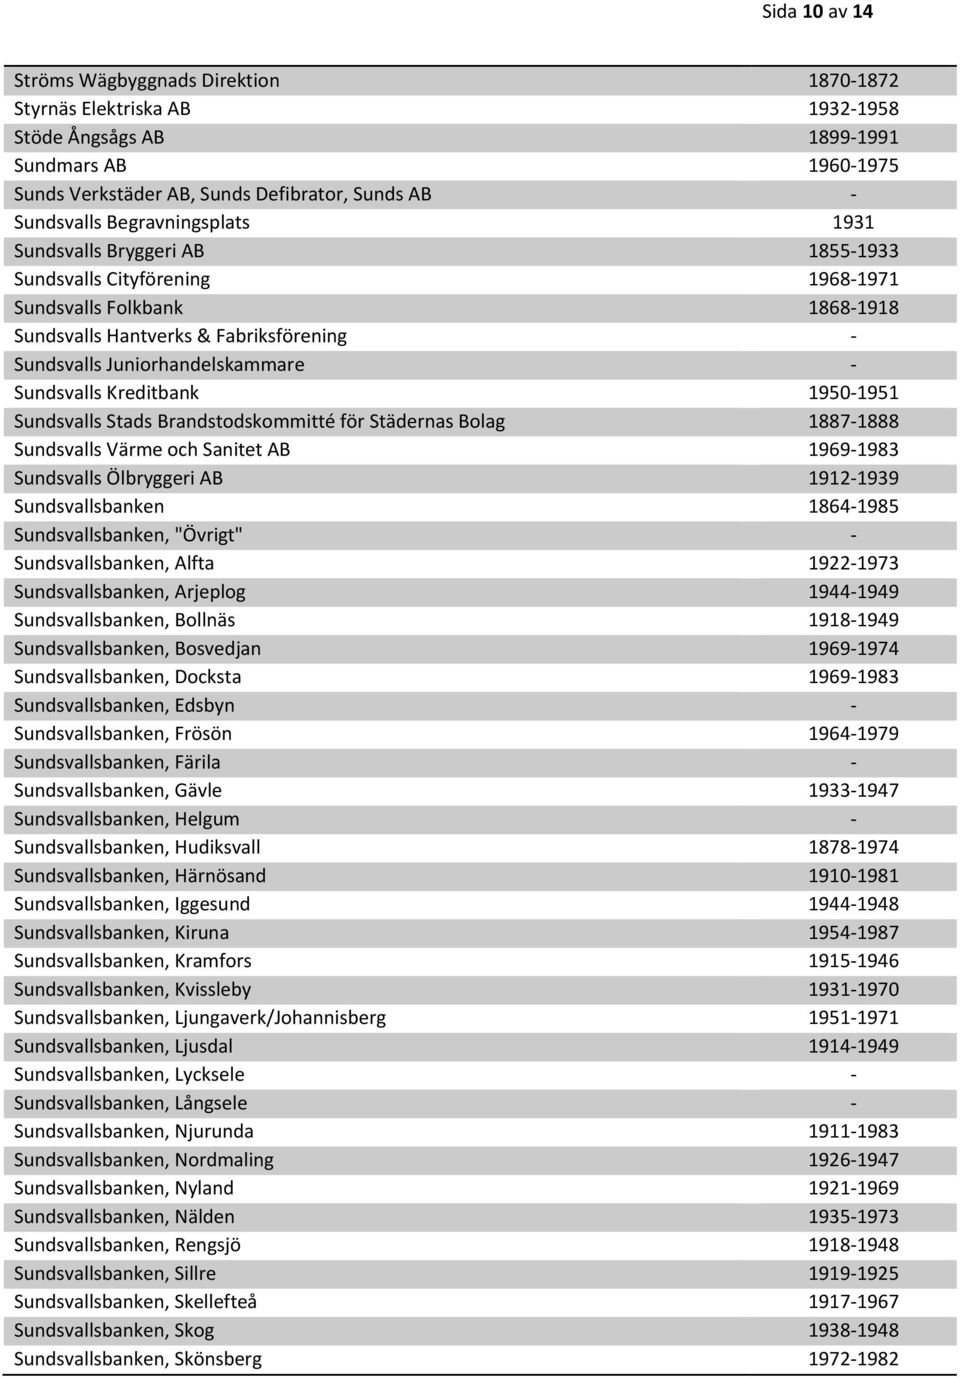 Sundsvalls Kreditbank 1950-1951 Sundsvalls Stads Brandstodskommitté för Städernas Bolag 1887-1888 Sundsvalls Värme och Sanitet AB 1969-1983 Sundsvalls Ölbryggeri AB 1912-1939 Sundsvallsbanken